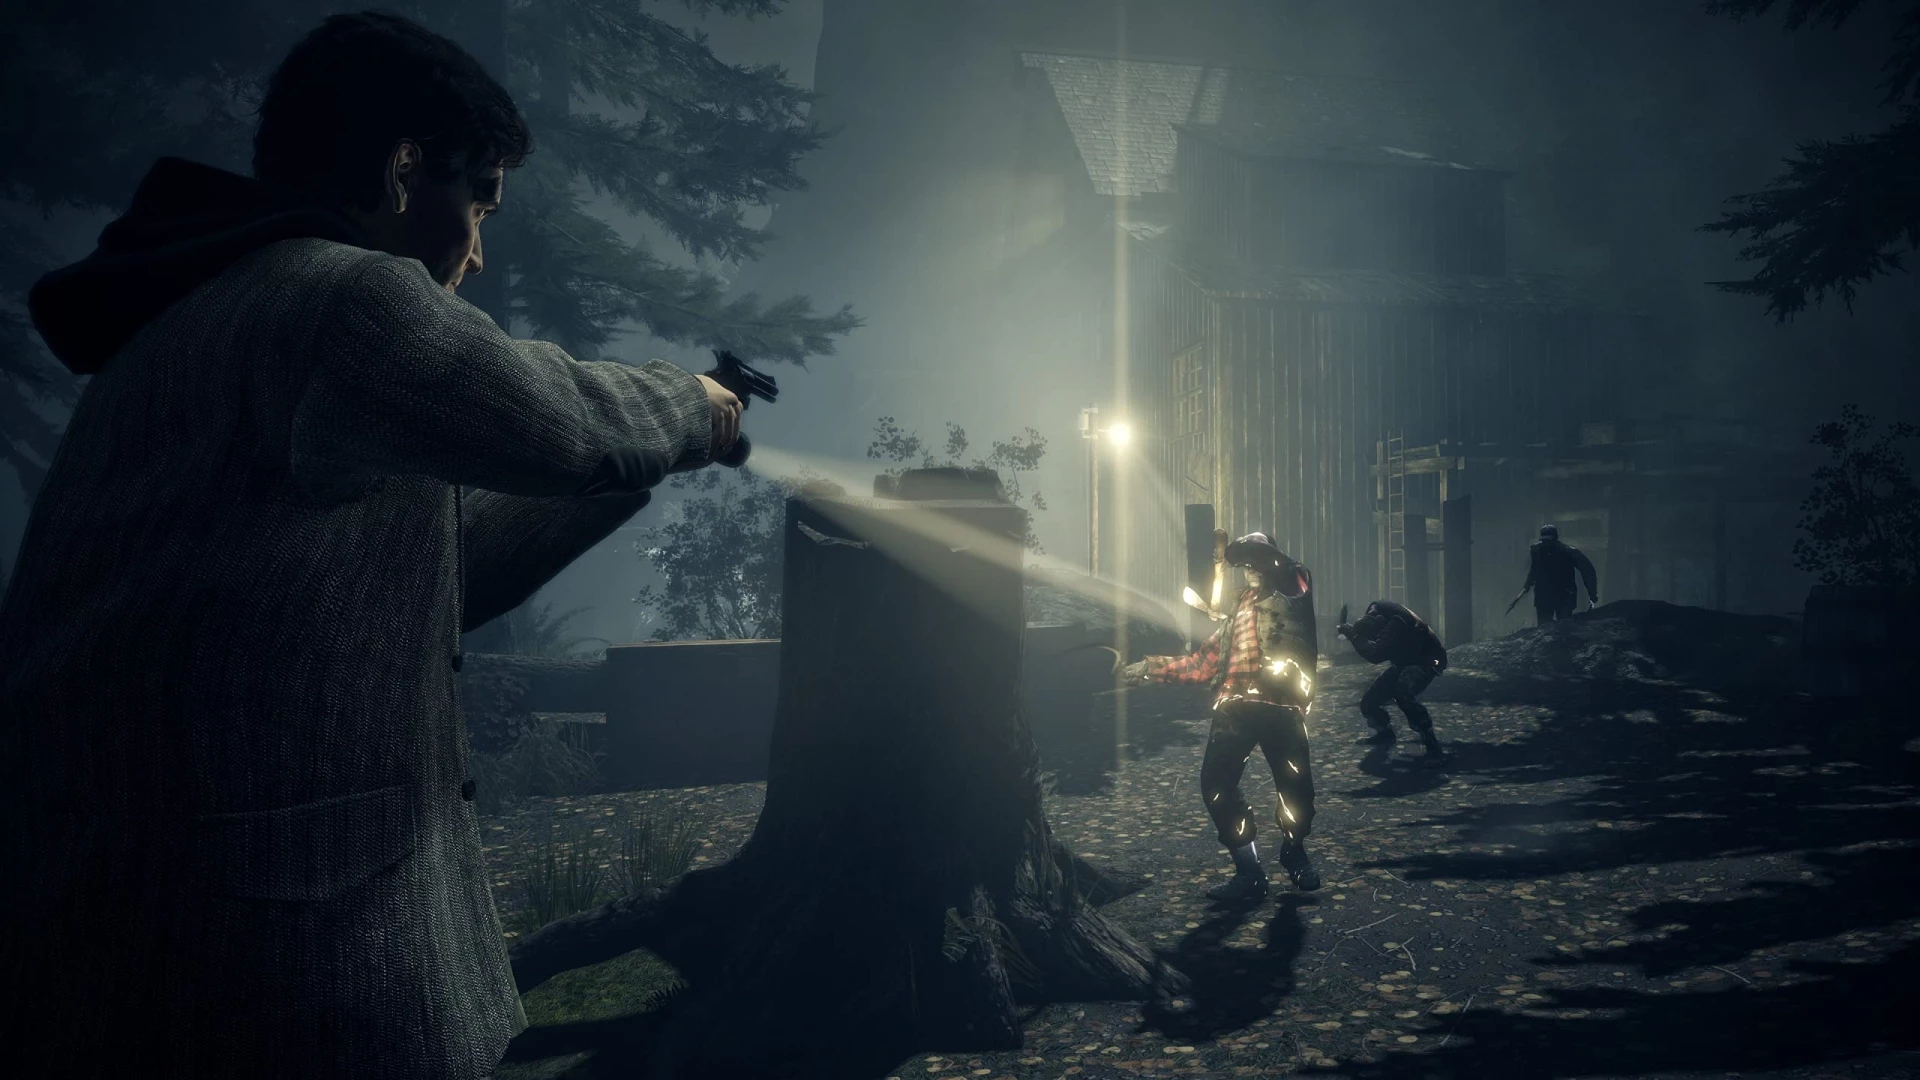 Alan Wake Remastered voor de Xbox One kopen op nedgame.nl